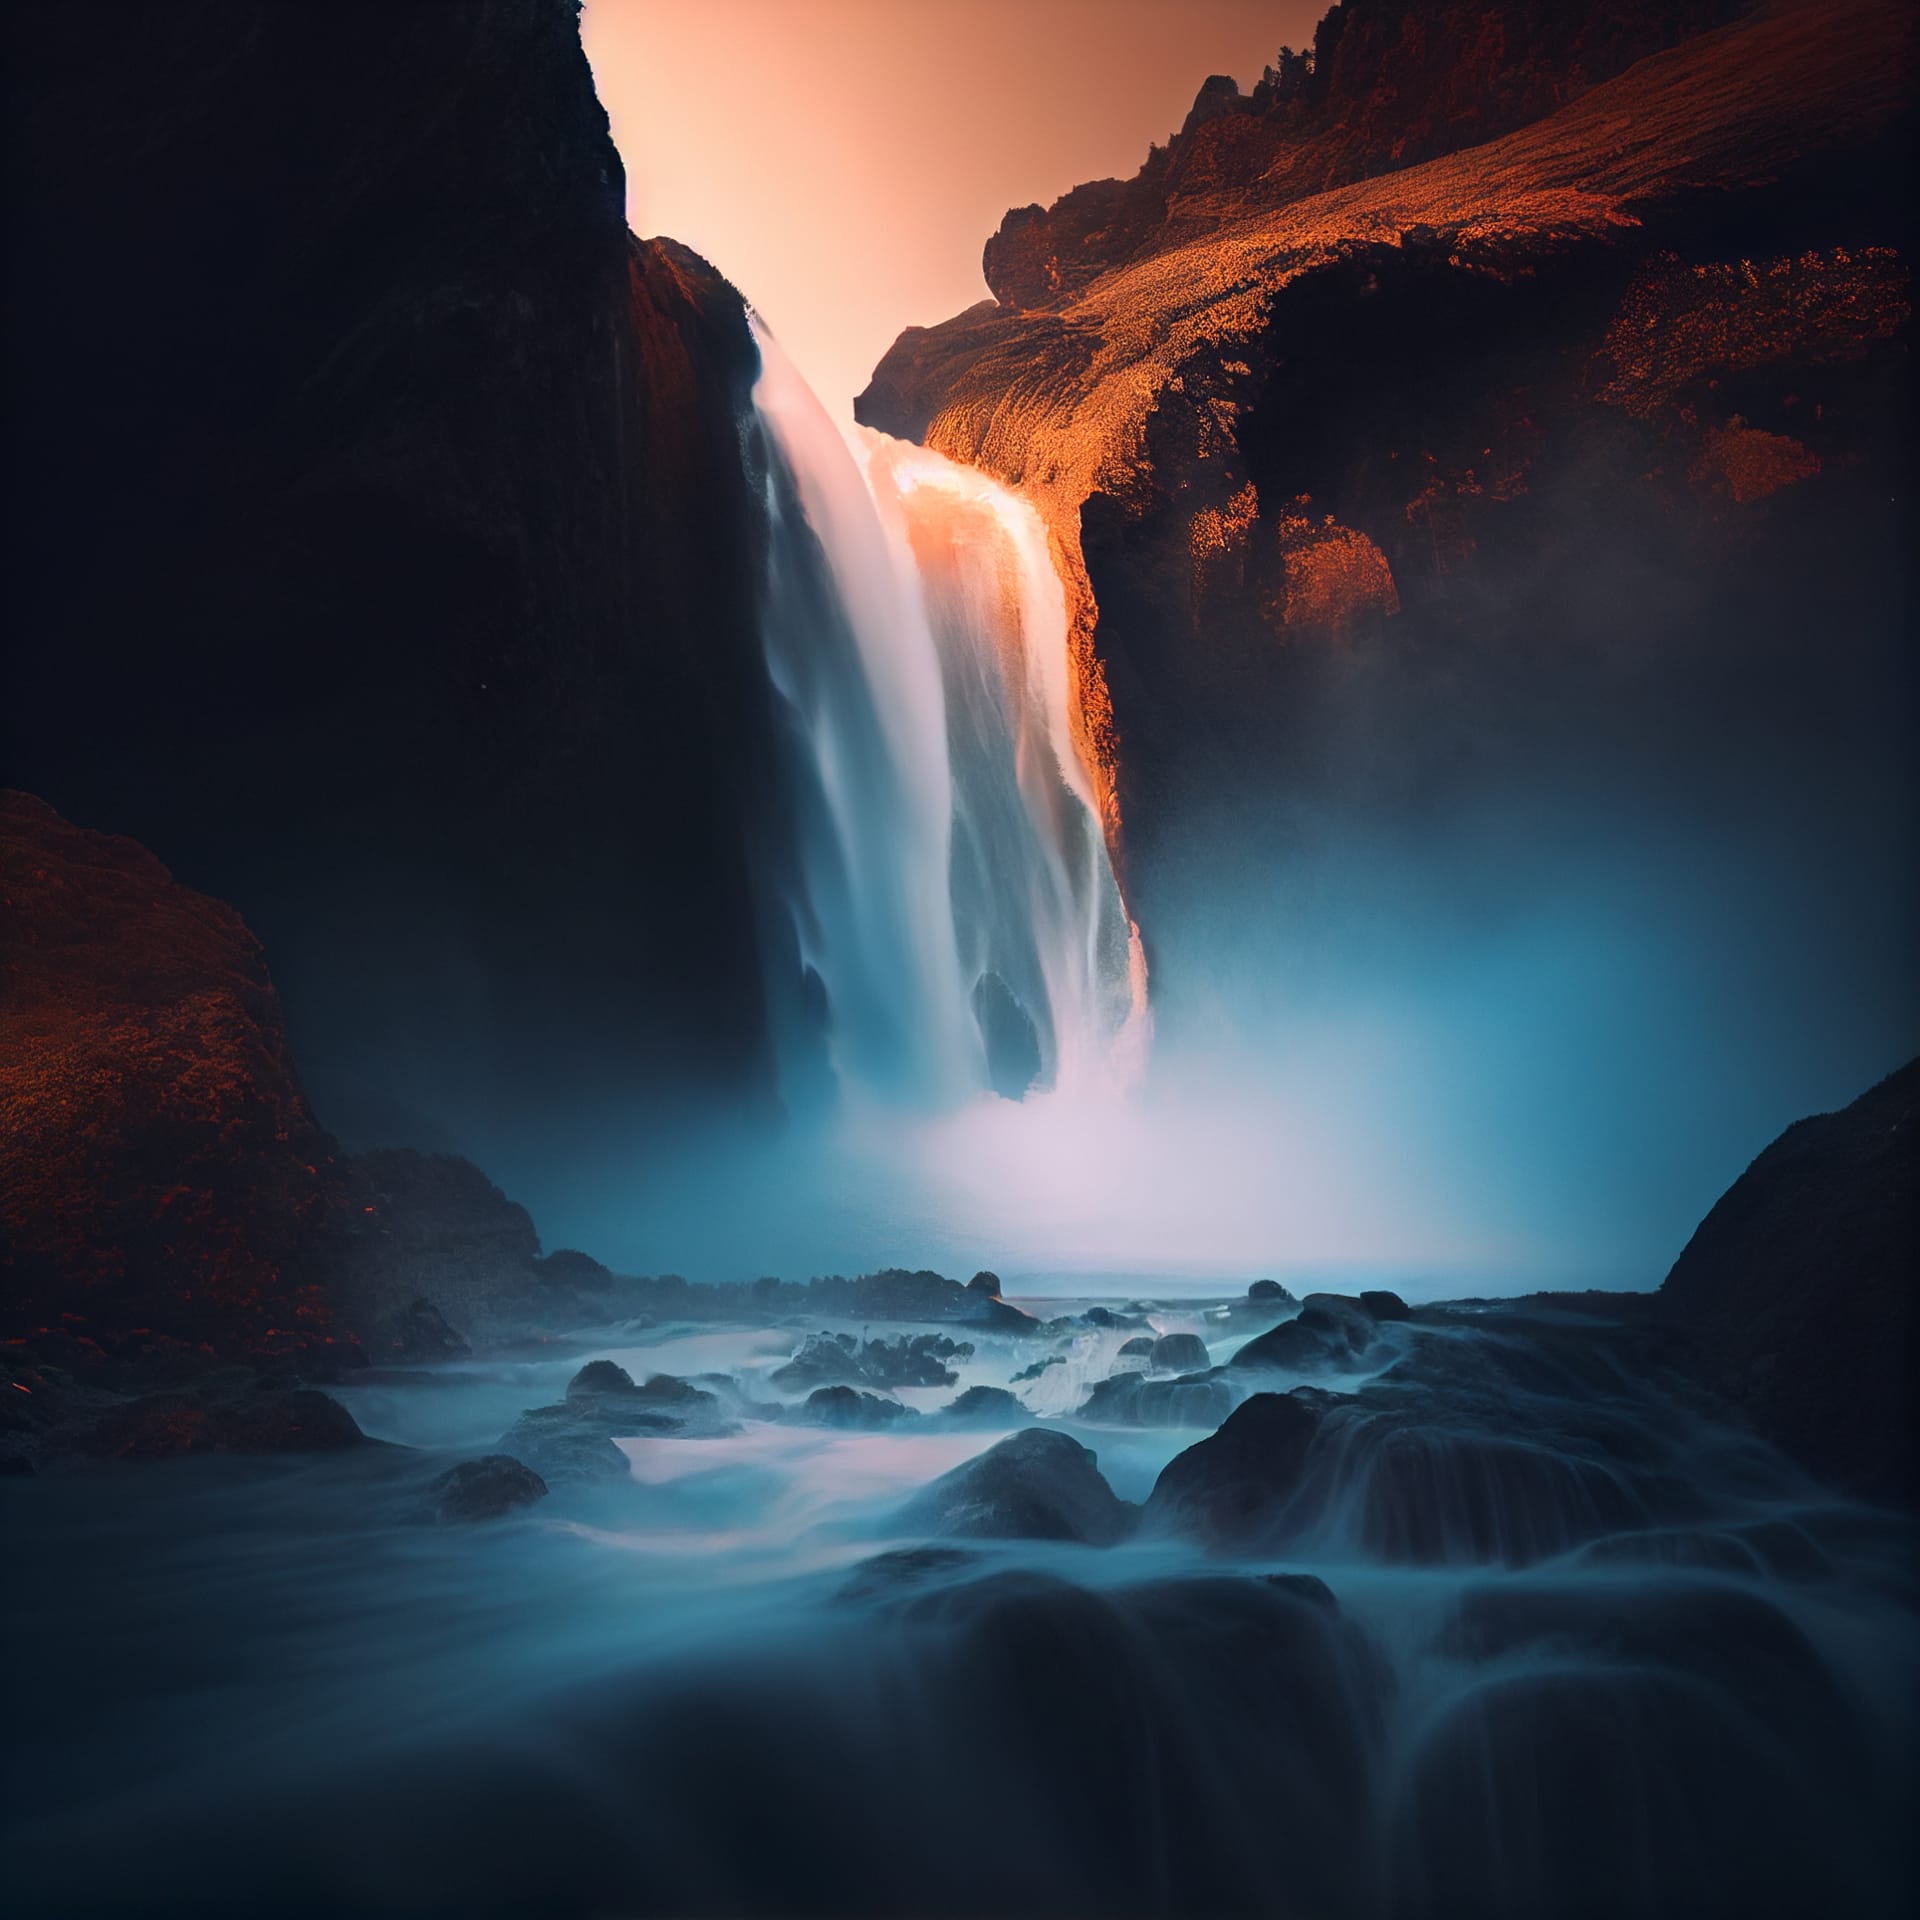 Beautiful waterfall landscape nature sunset sunrise image